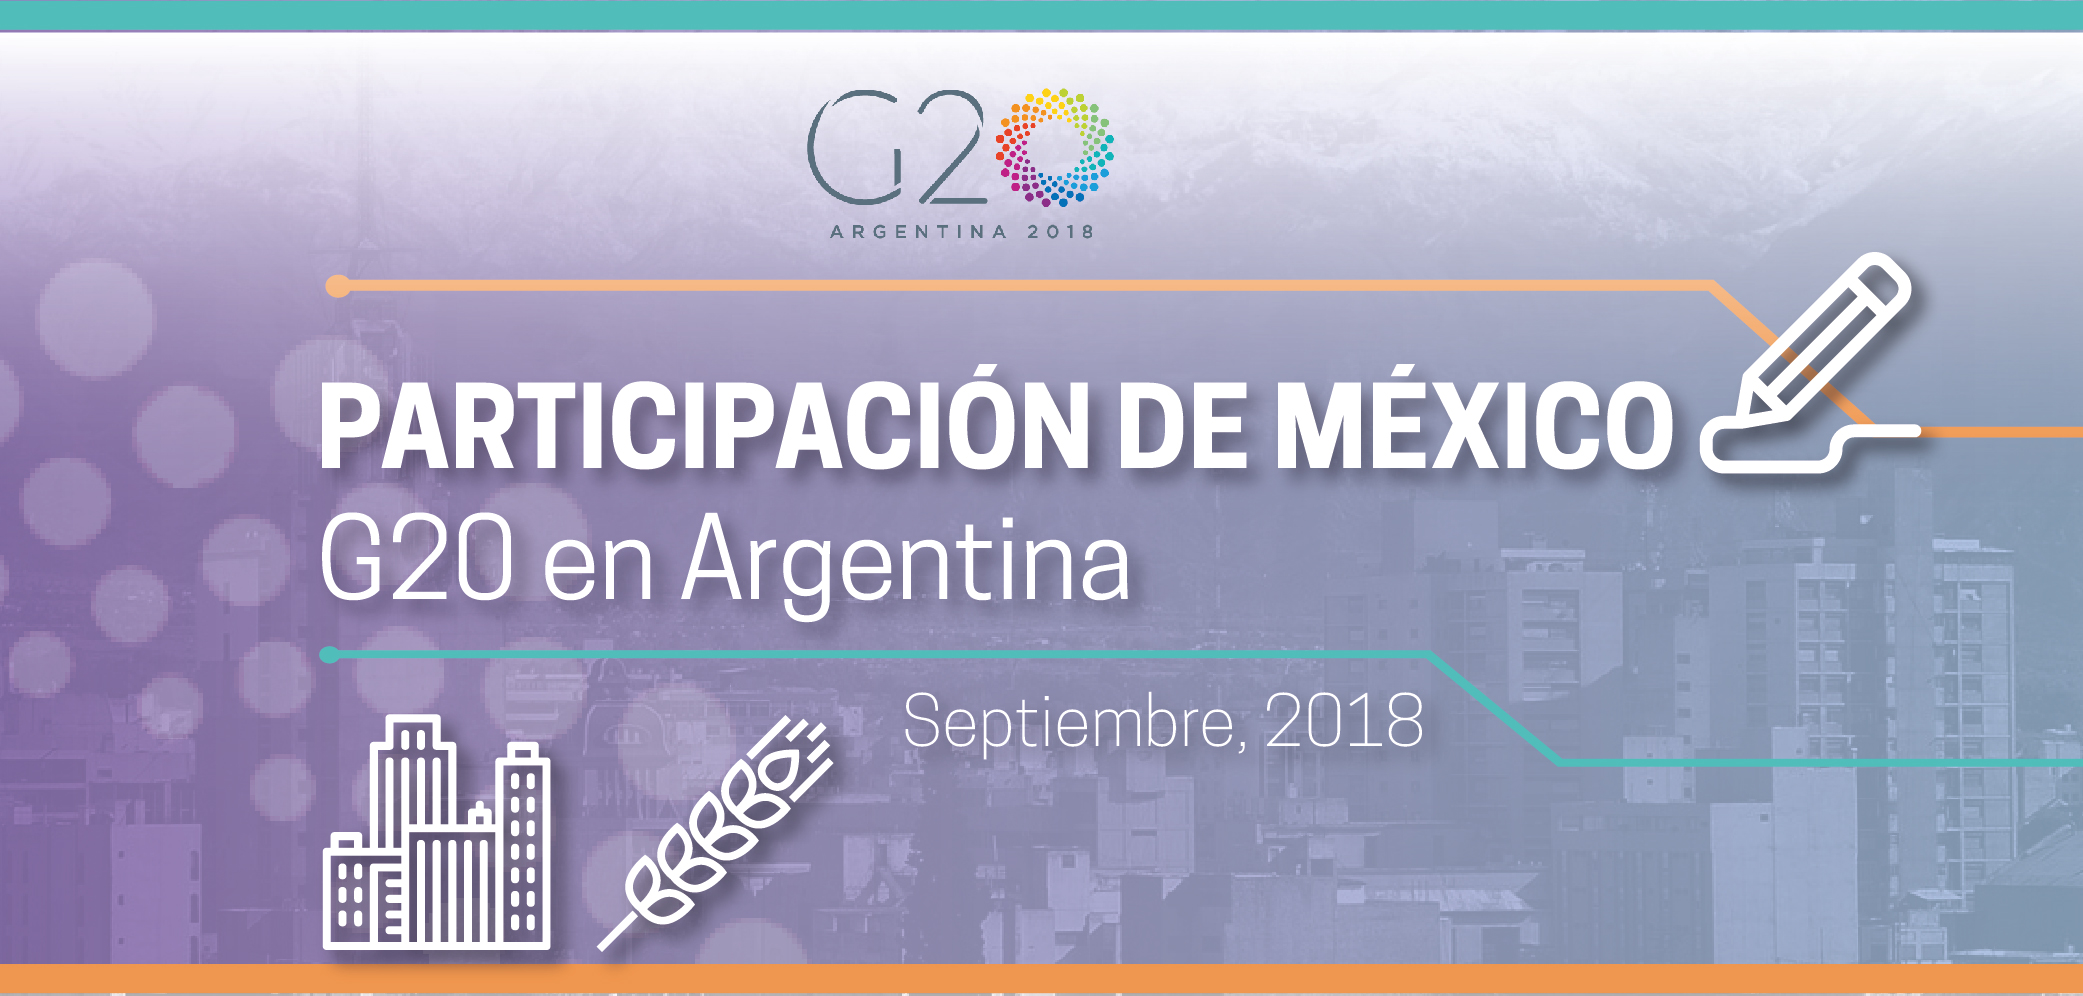 Imagen gráfica: Participación de México en el G20 en Argentina.
Muestra un gráfico de la ciudad y un trigo.
Septiembre, 2018